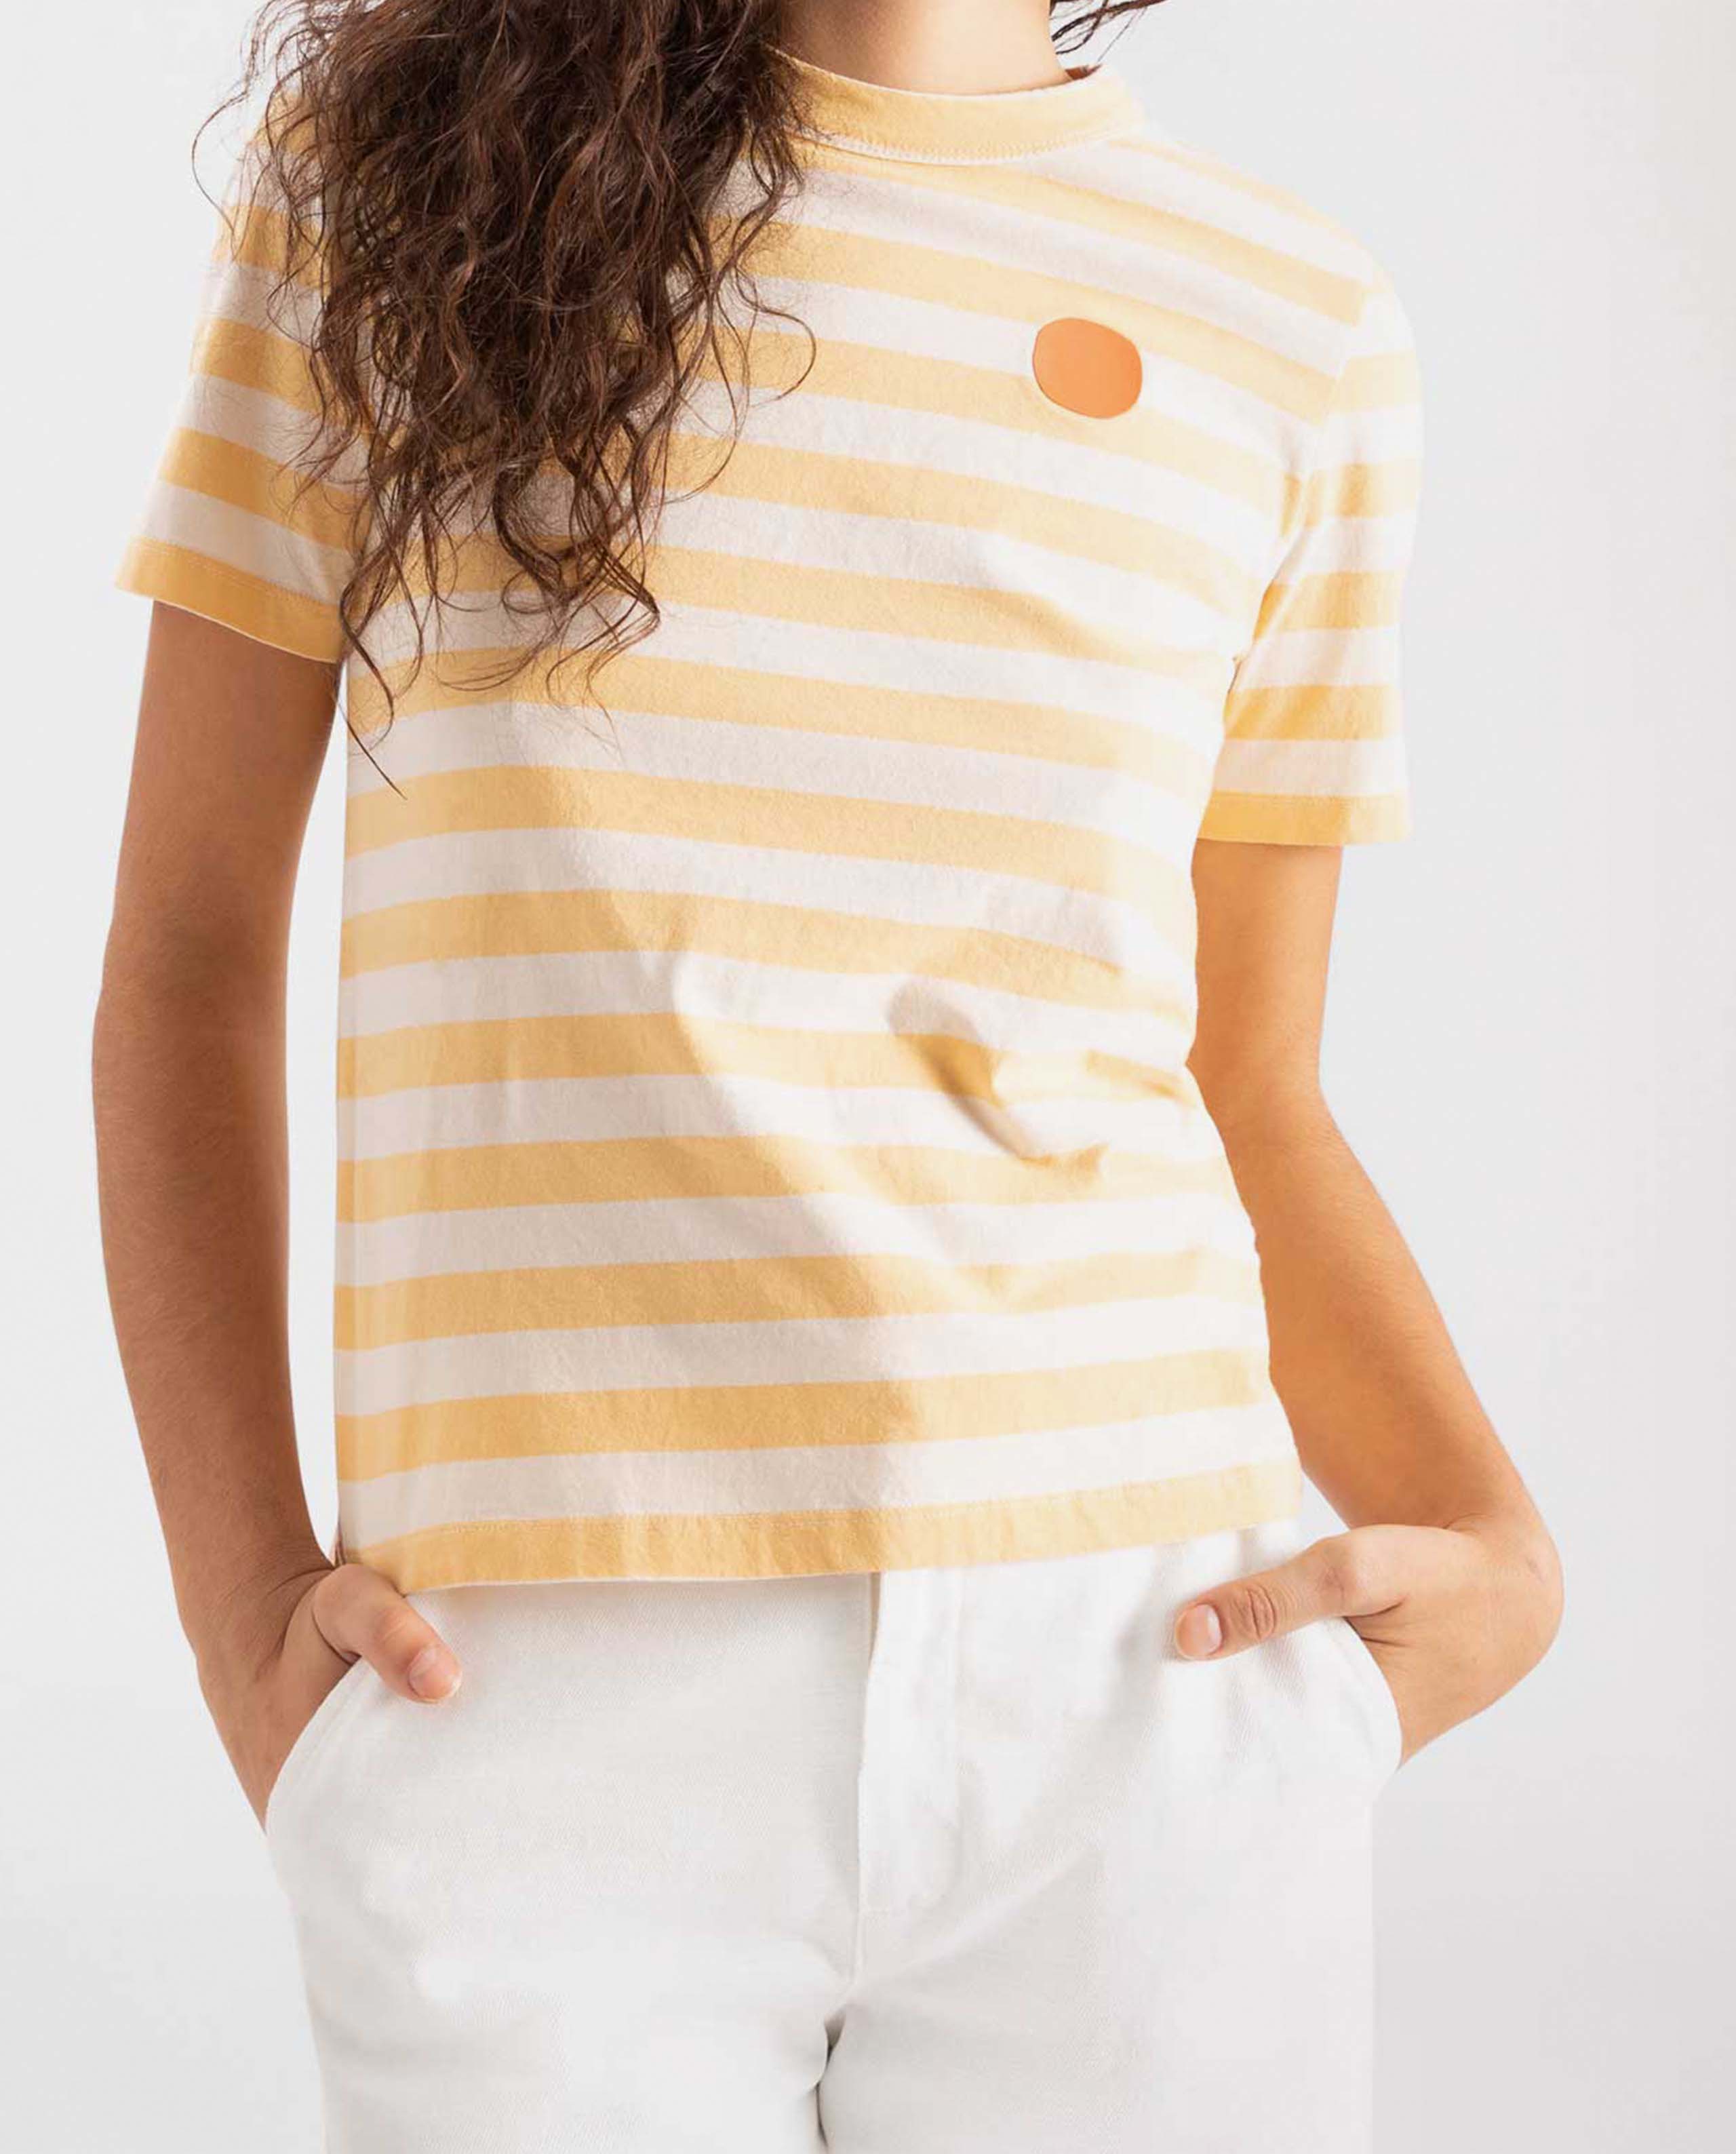 Tee-shirt blanc femme manche courte en coton organique